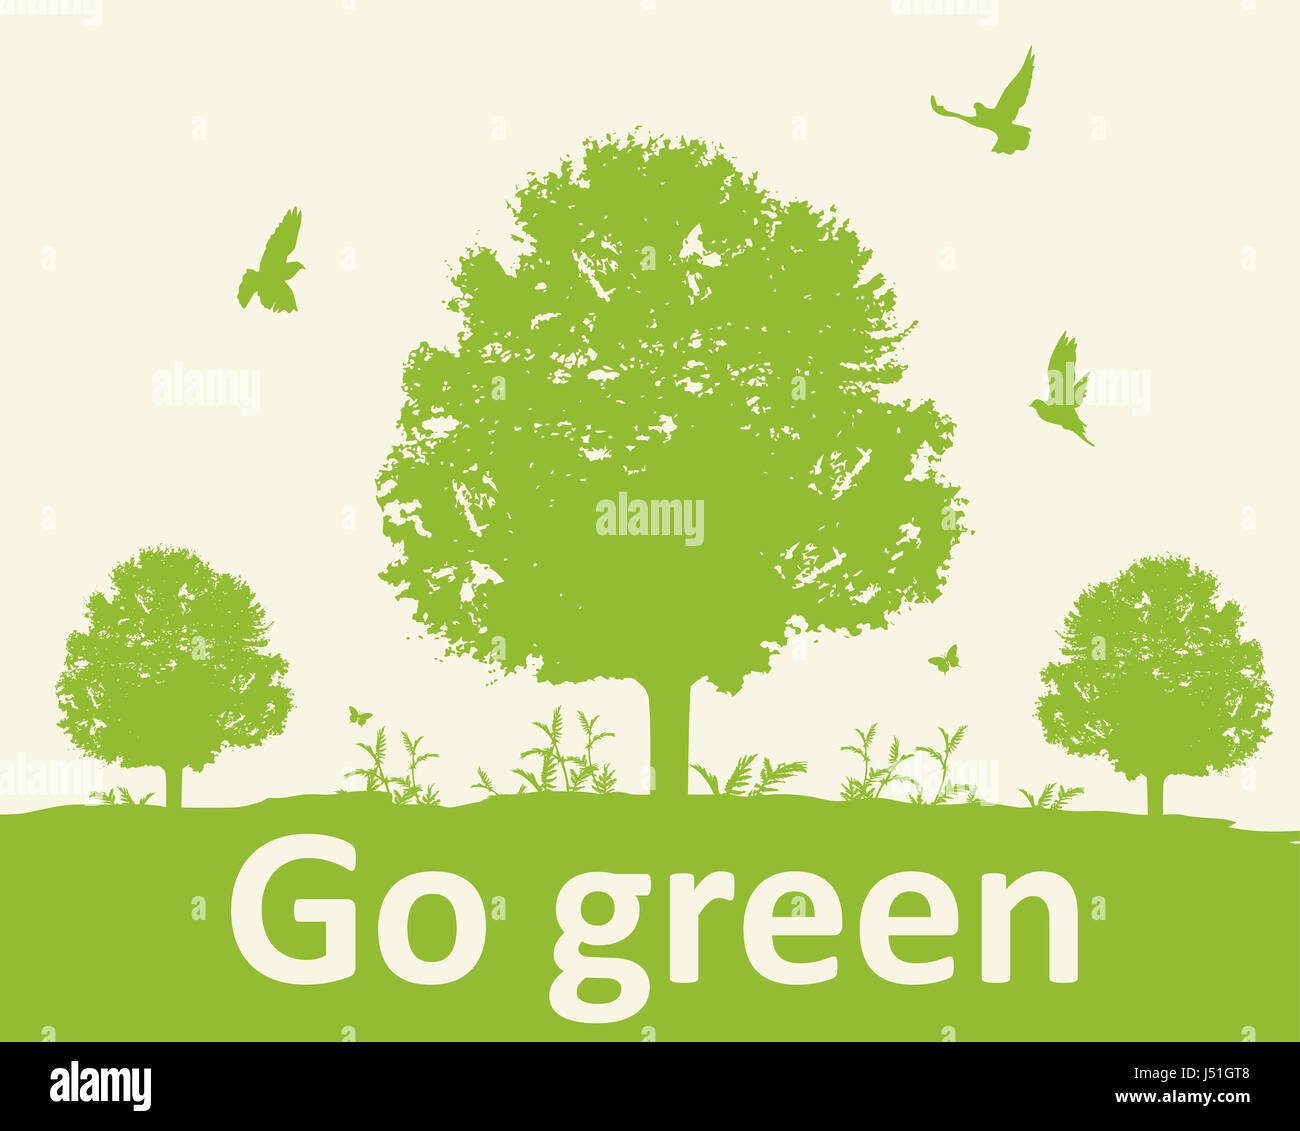 Go green background là một sự lựa chọn hoàn hảo để tạo nên không gian làm việc và sinh hoạt thân thiện với môi trường. Với tone màu xanh ngọt ngào, nó sẽ giúp bạn xua tan bầu không khí ồn ào và căng thẳng.